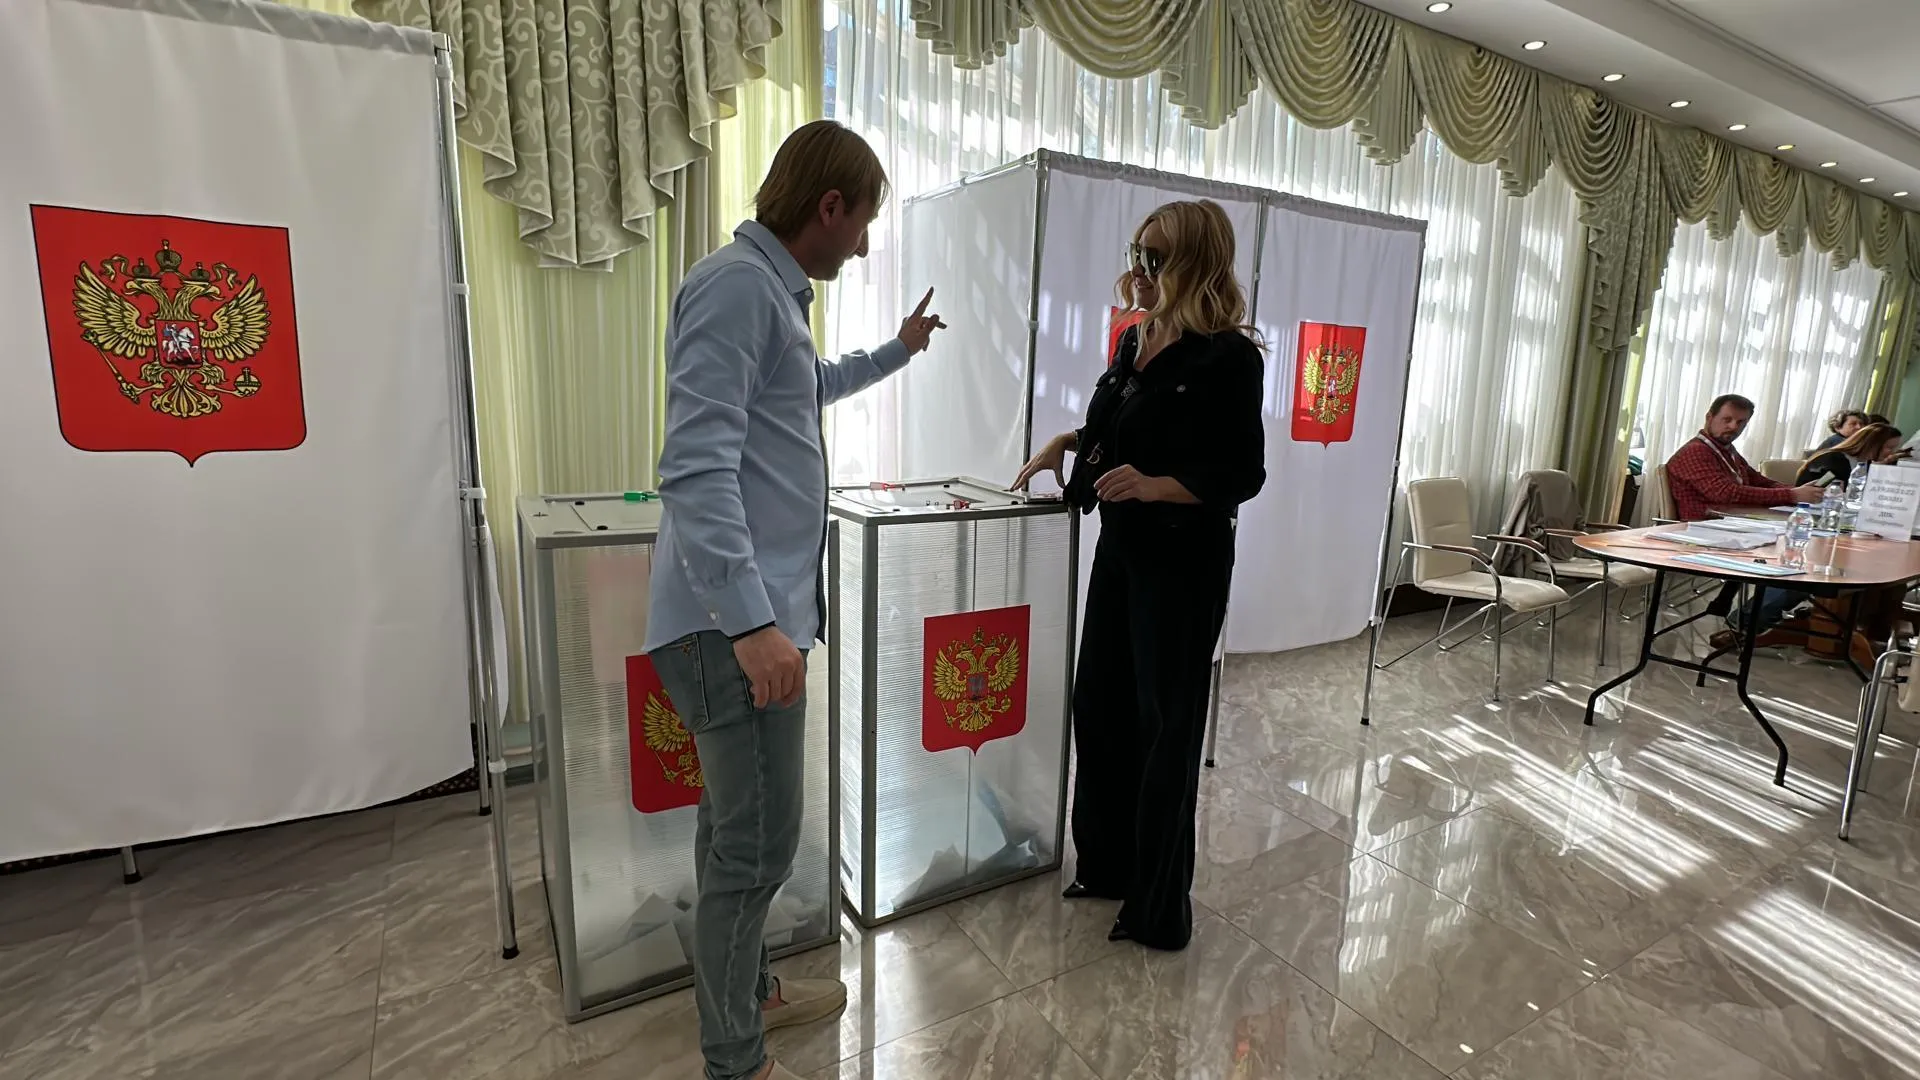 Яна Рудковская и Евгений Плющенко проголосовали в Назарьево